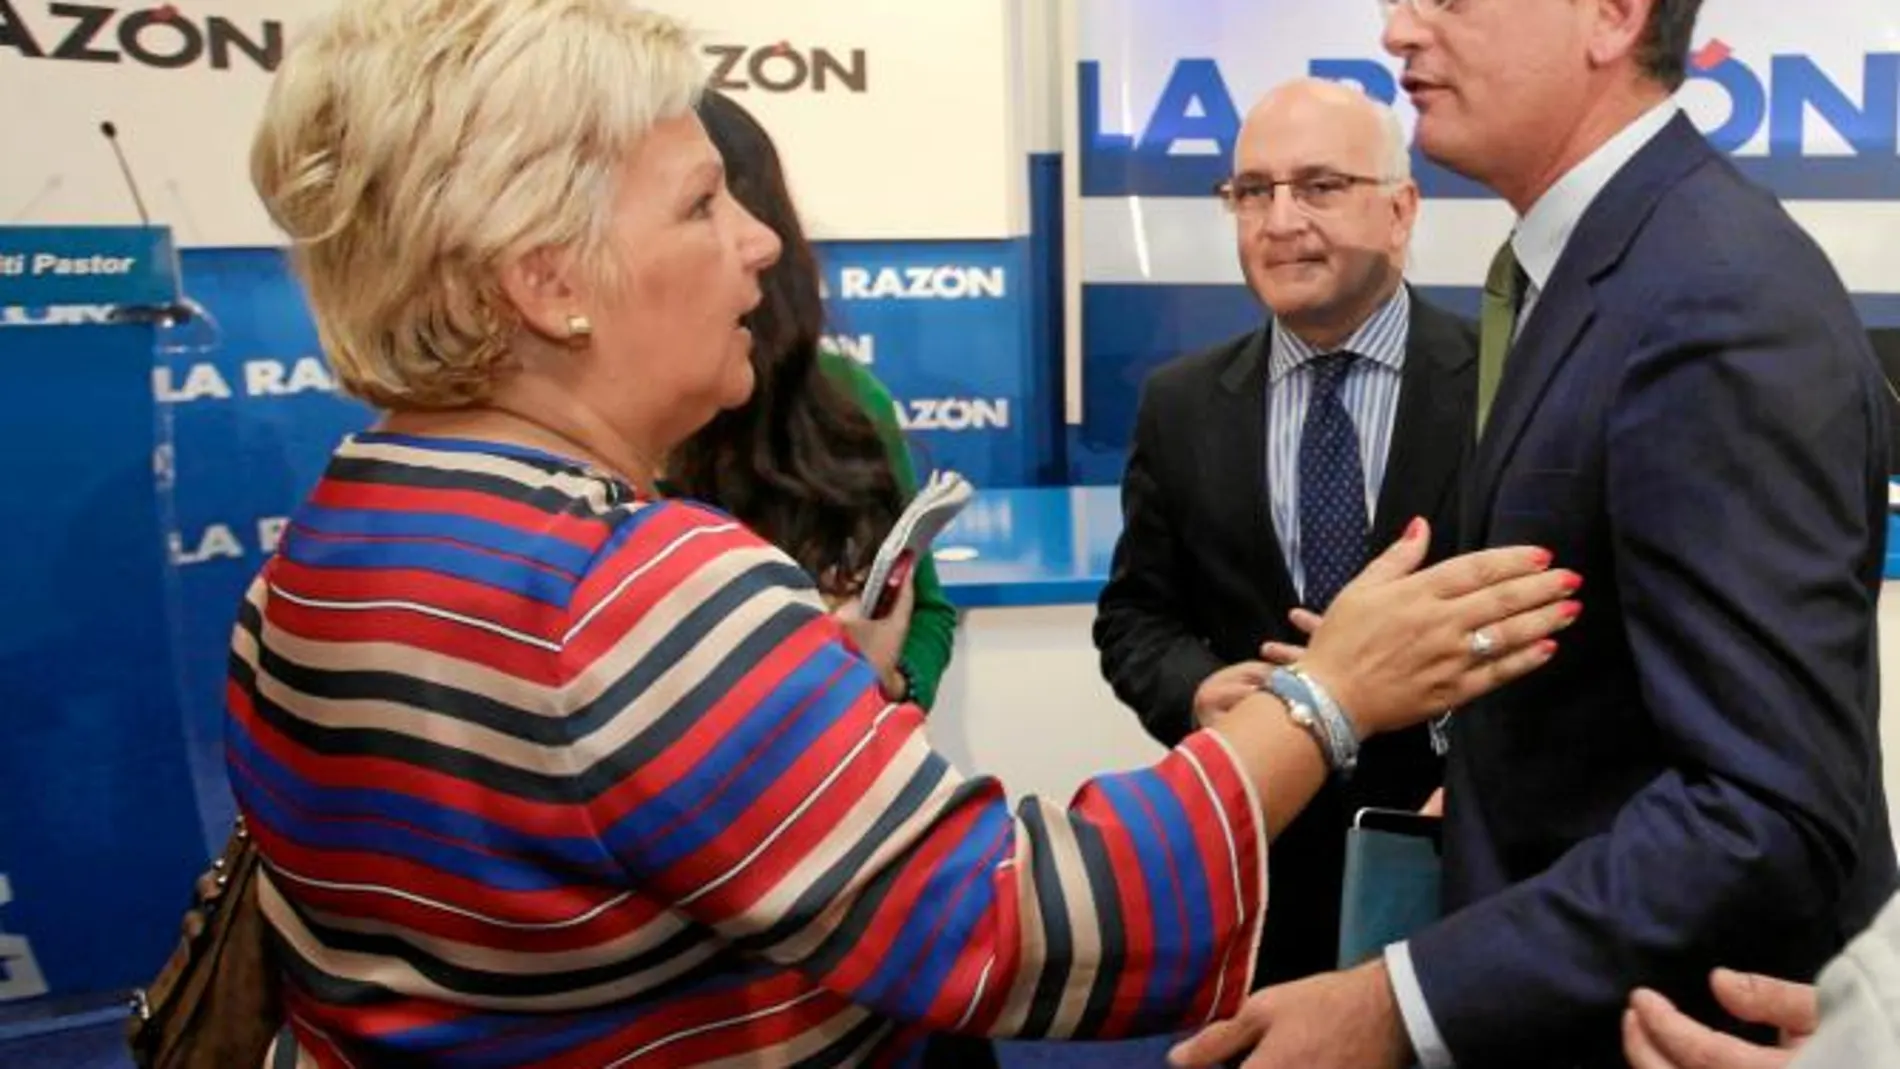 El candidato del PP al Parlamento vasco, Antonio Basagoiti, saluda a la presidenta de la AVT, Ángeles Pedraza, en presencia de Javier Zarzalejos